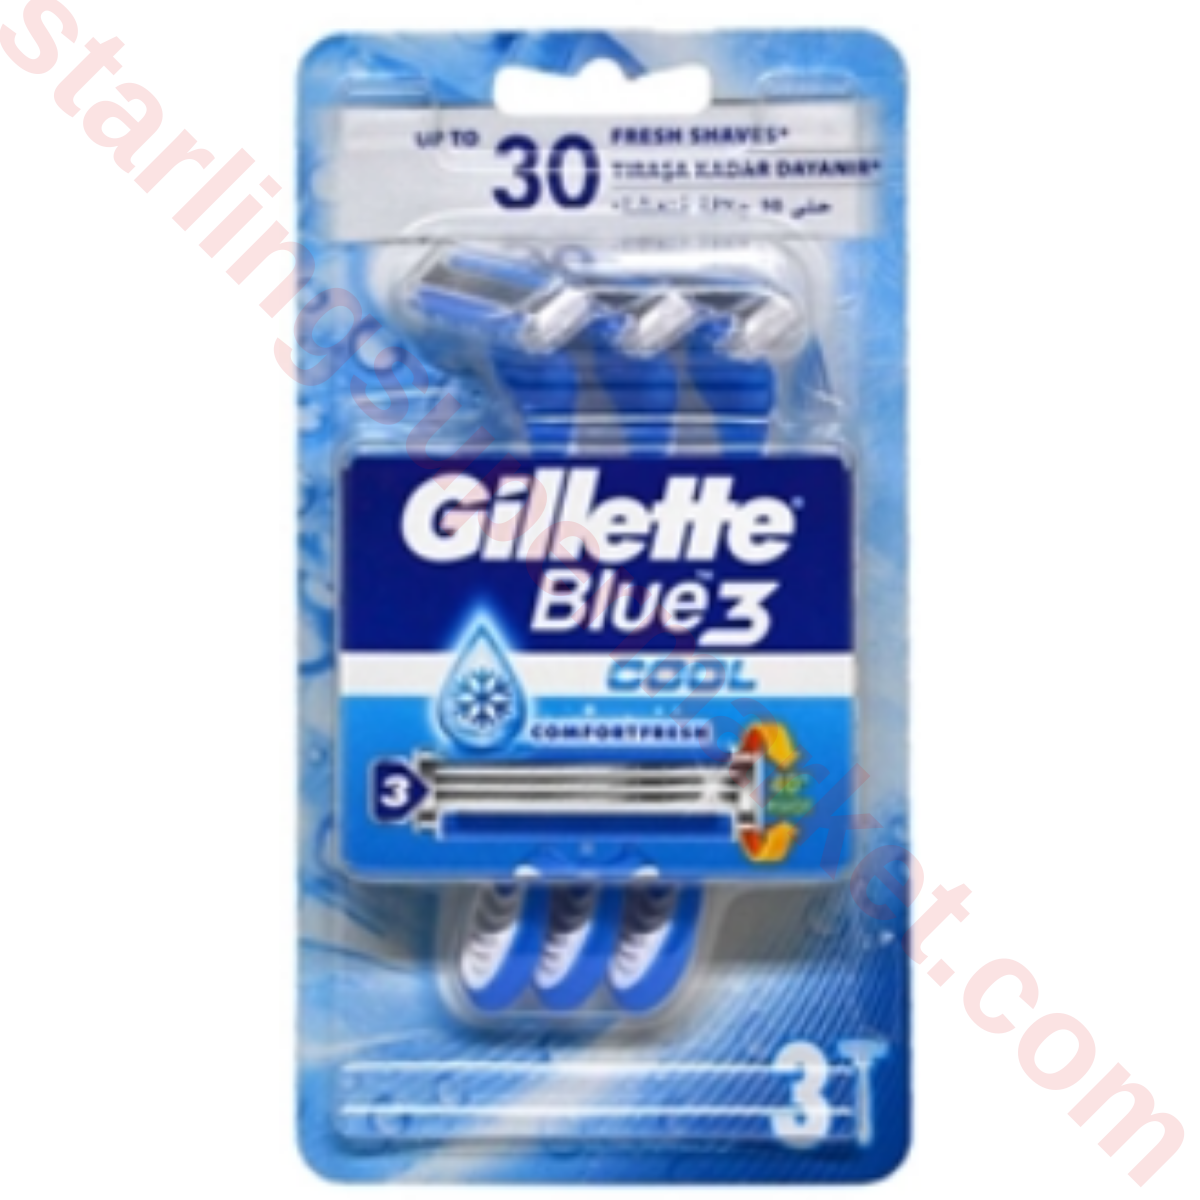 GILLETTE BLUE 3 ICE SHAVING MACHINE 3 PACKS